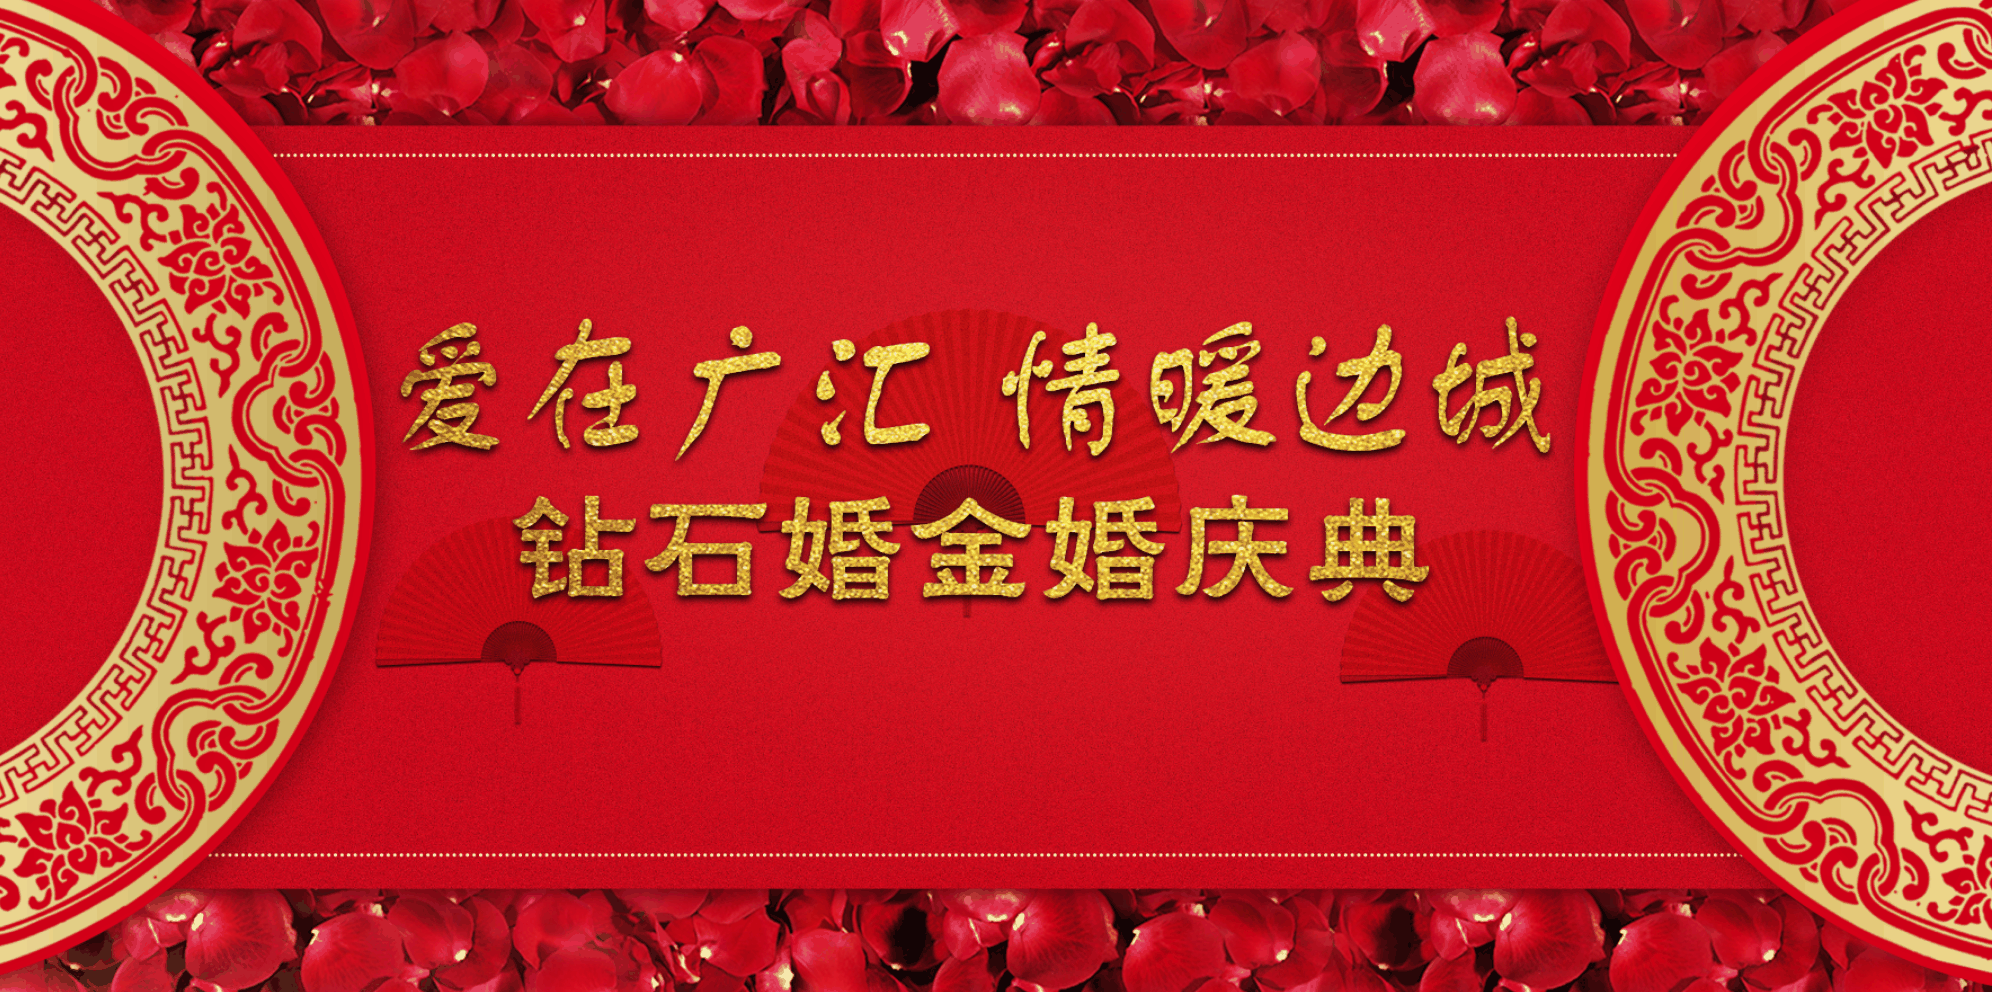 广汇集团举行第八届钻石婚 金婚庆典